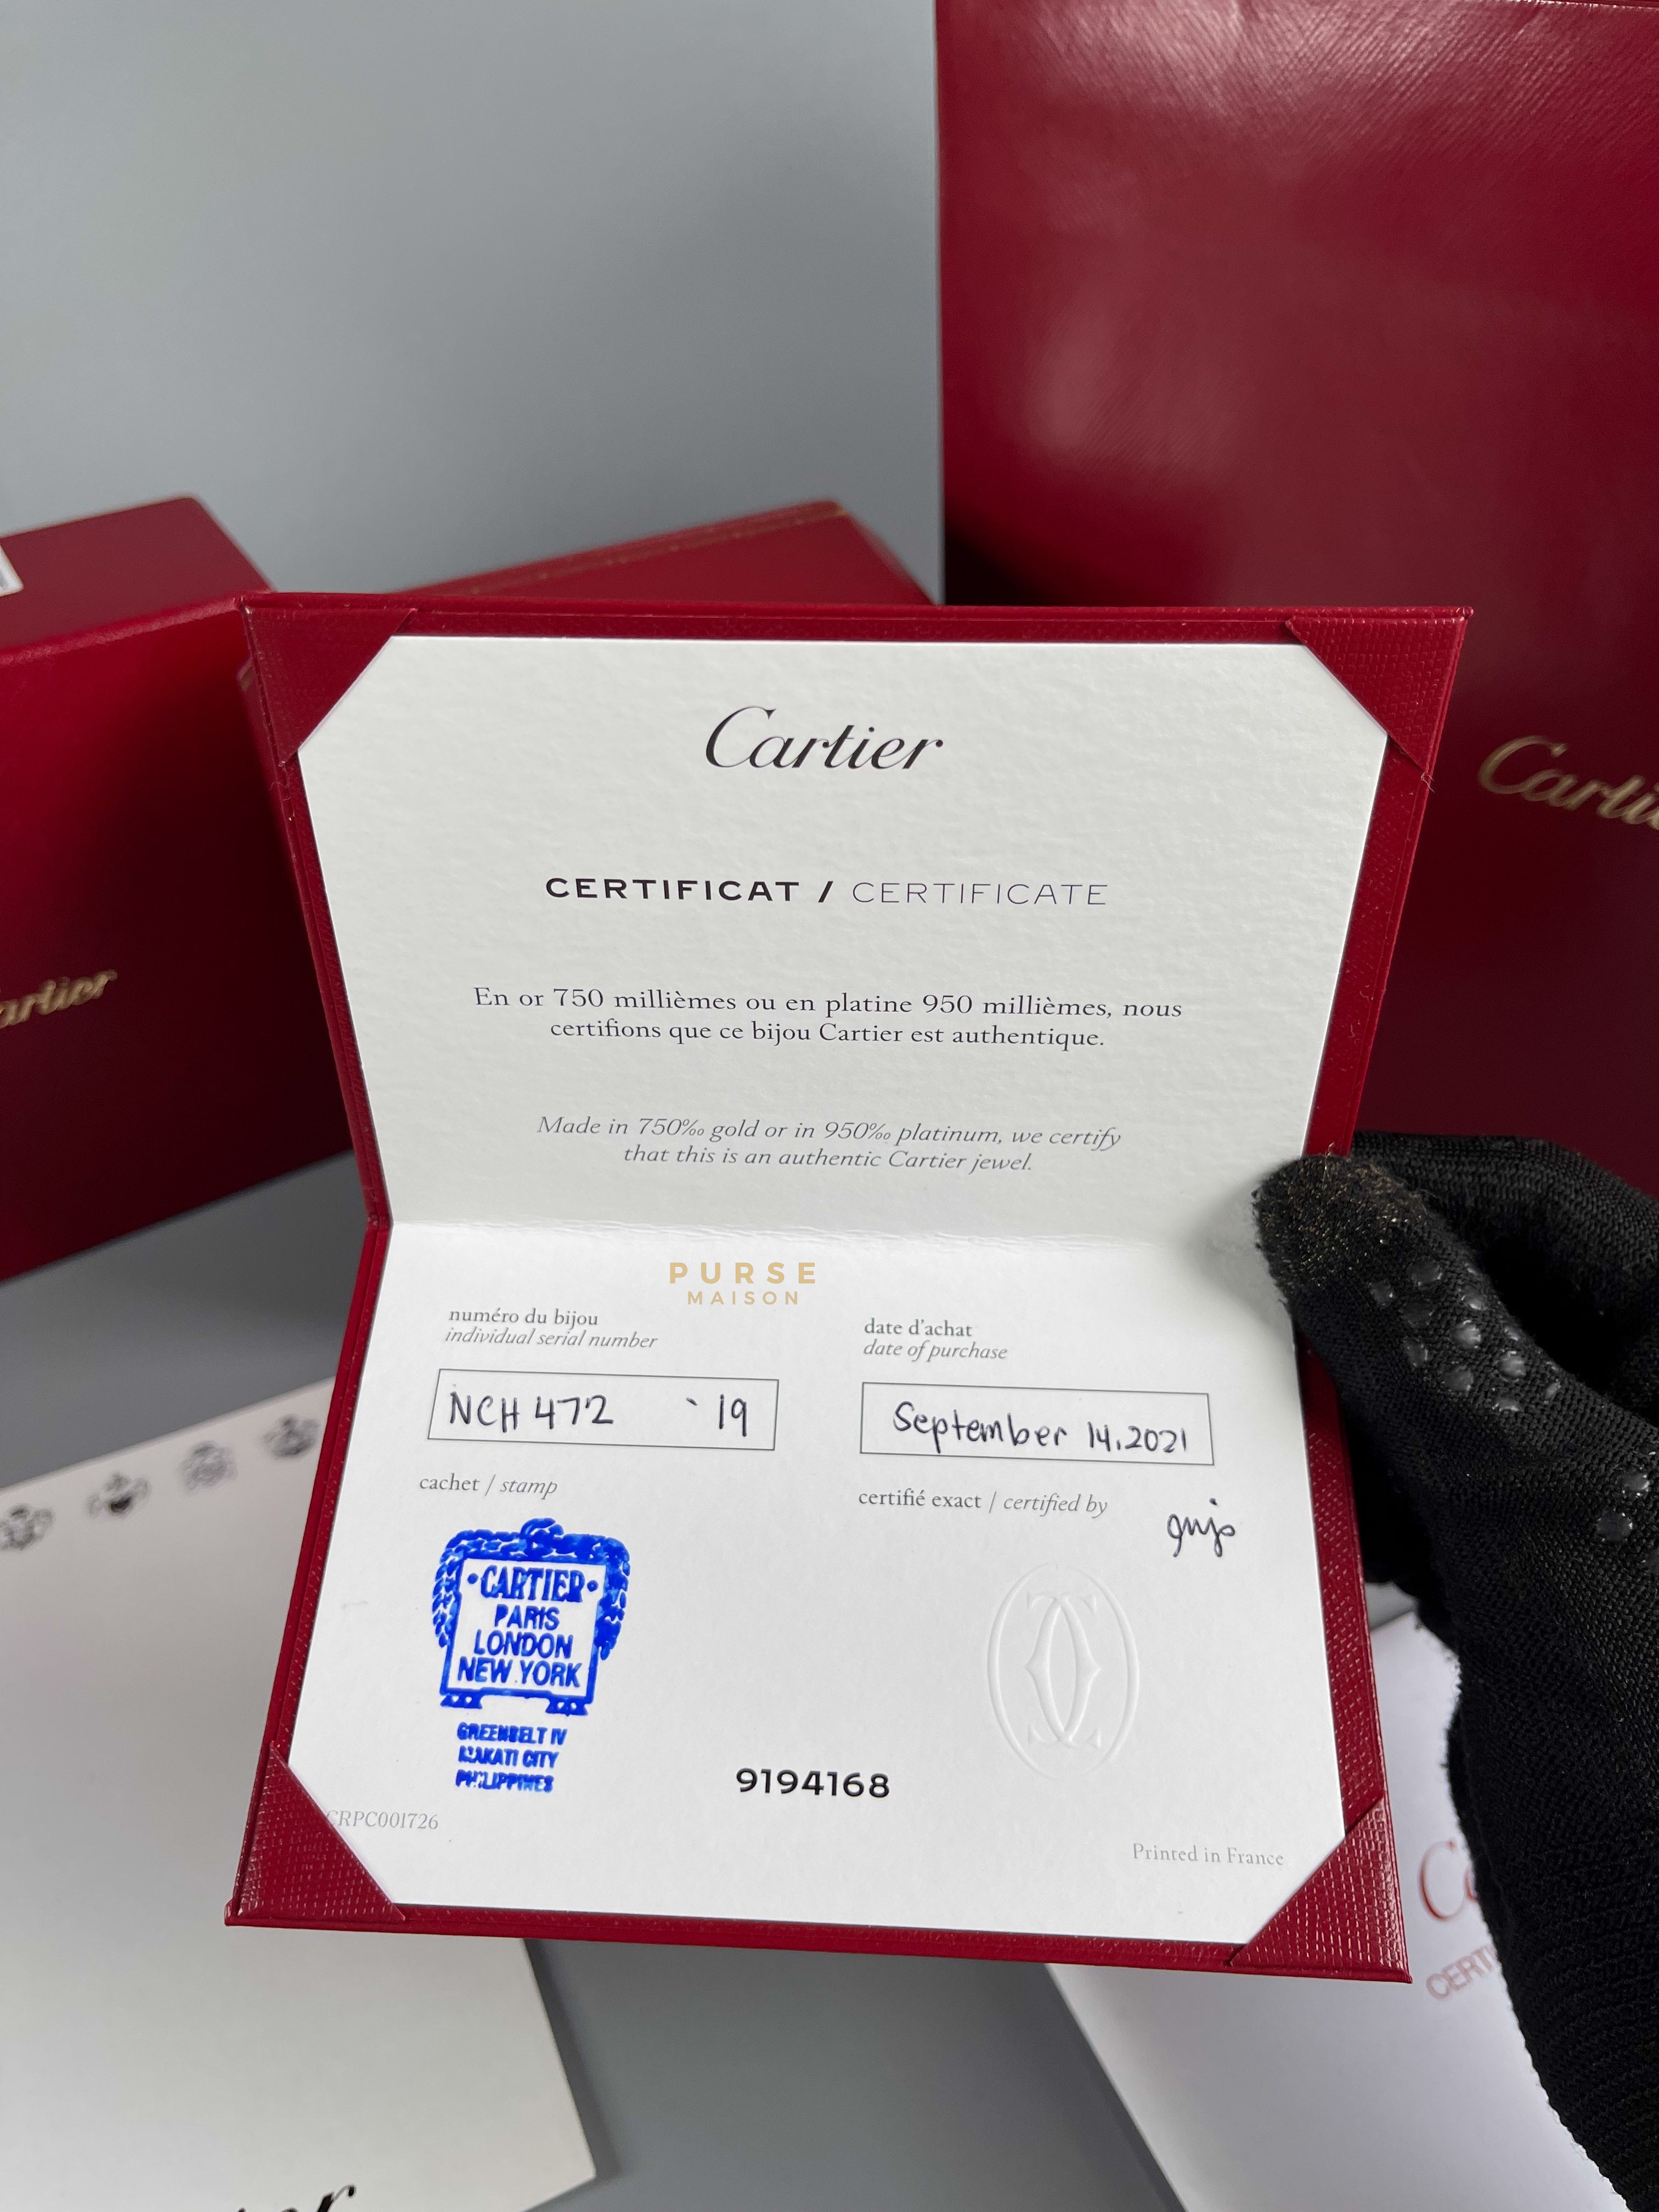 Cartier Juste Un Clou with Diamonds Yellow Gold Bangle (Size 19) | Purse Maison Luxury Bags Shop